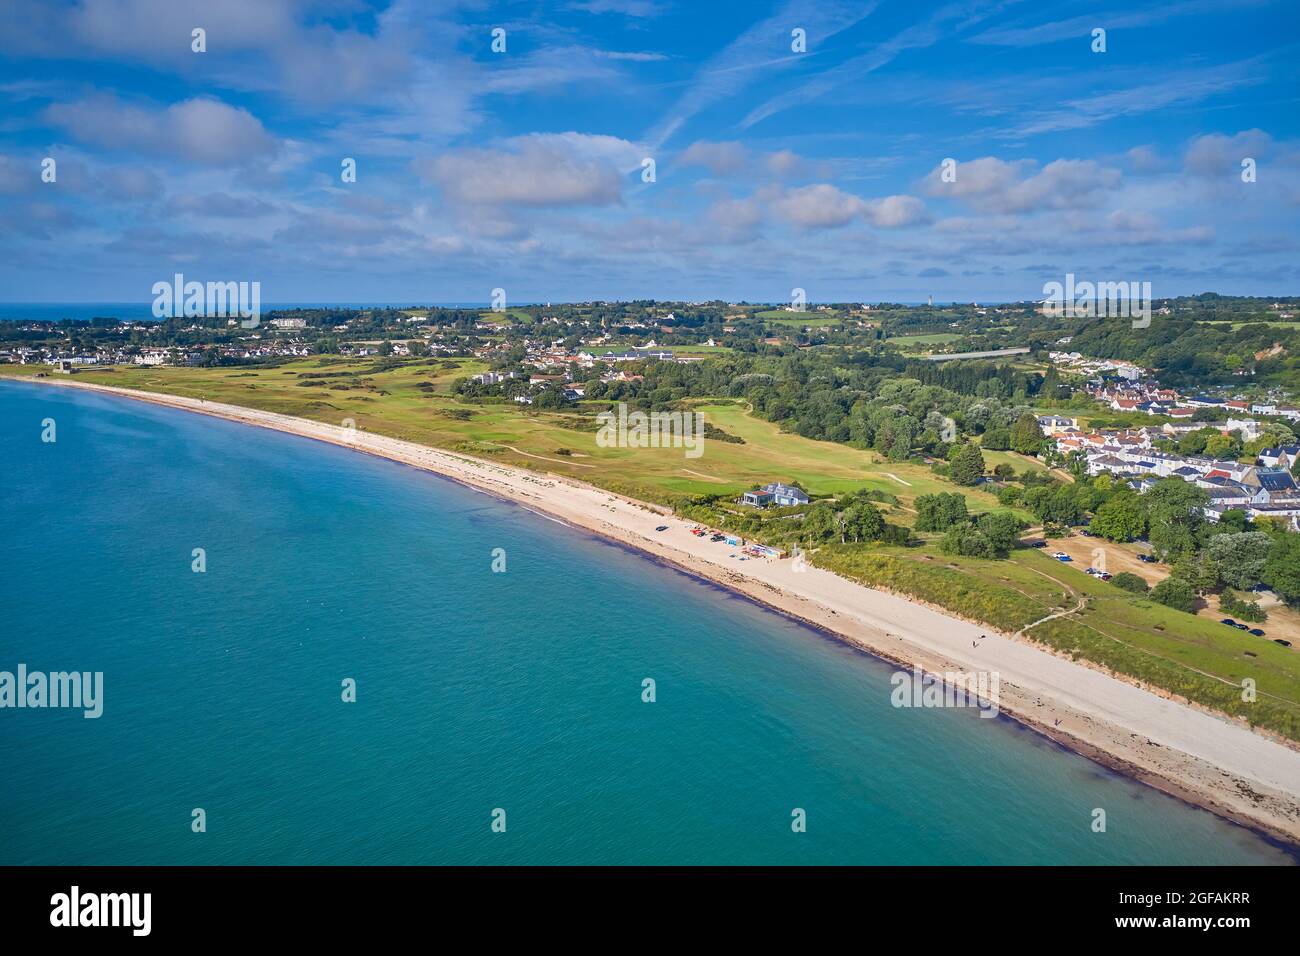 Image de drone aérien de la baie de Grouville avec mer calme, parcours de golf et paysage. Jersey ci Banque D'Images